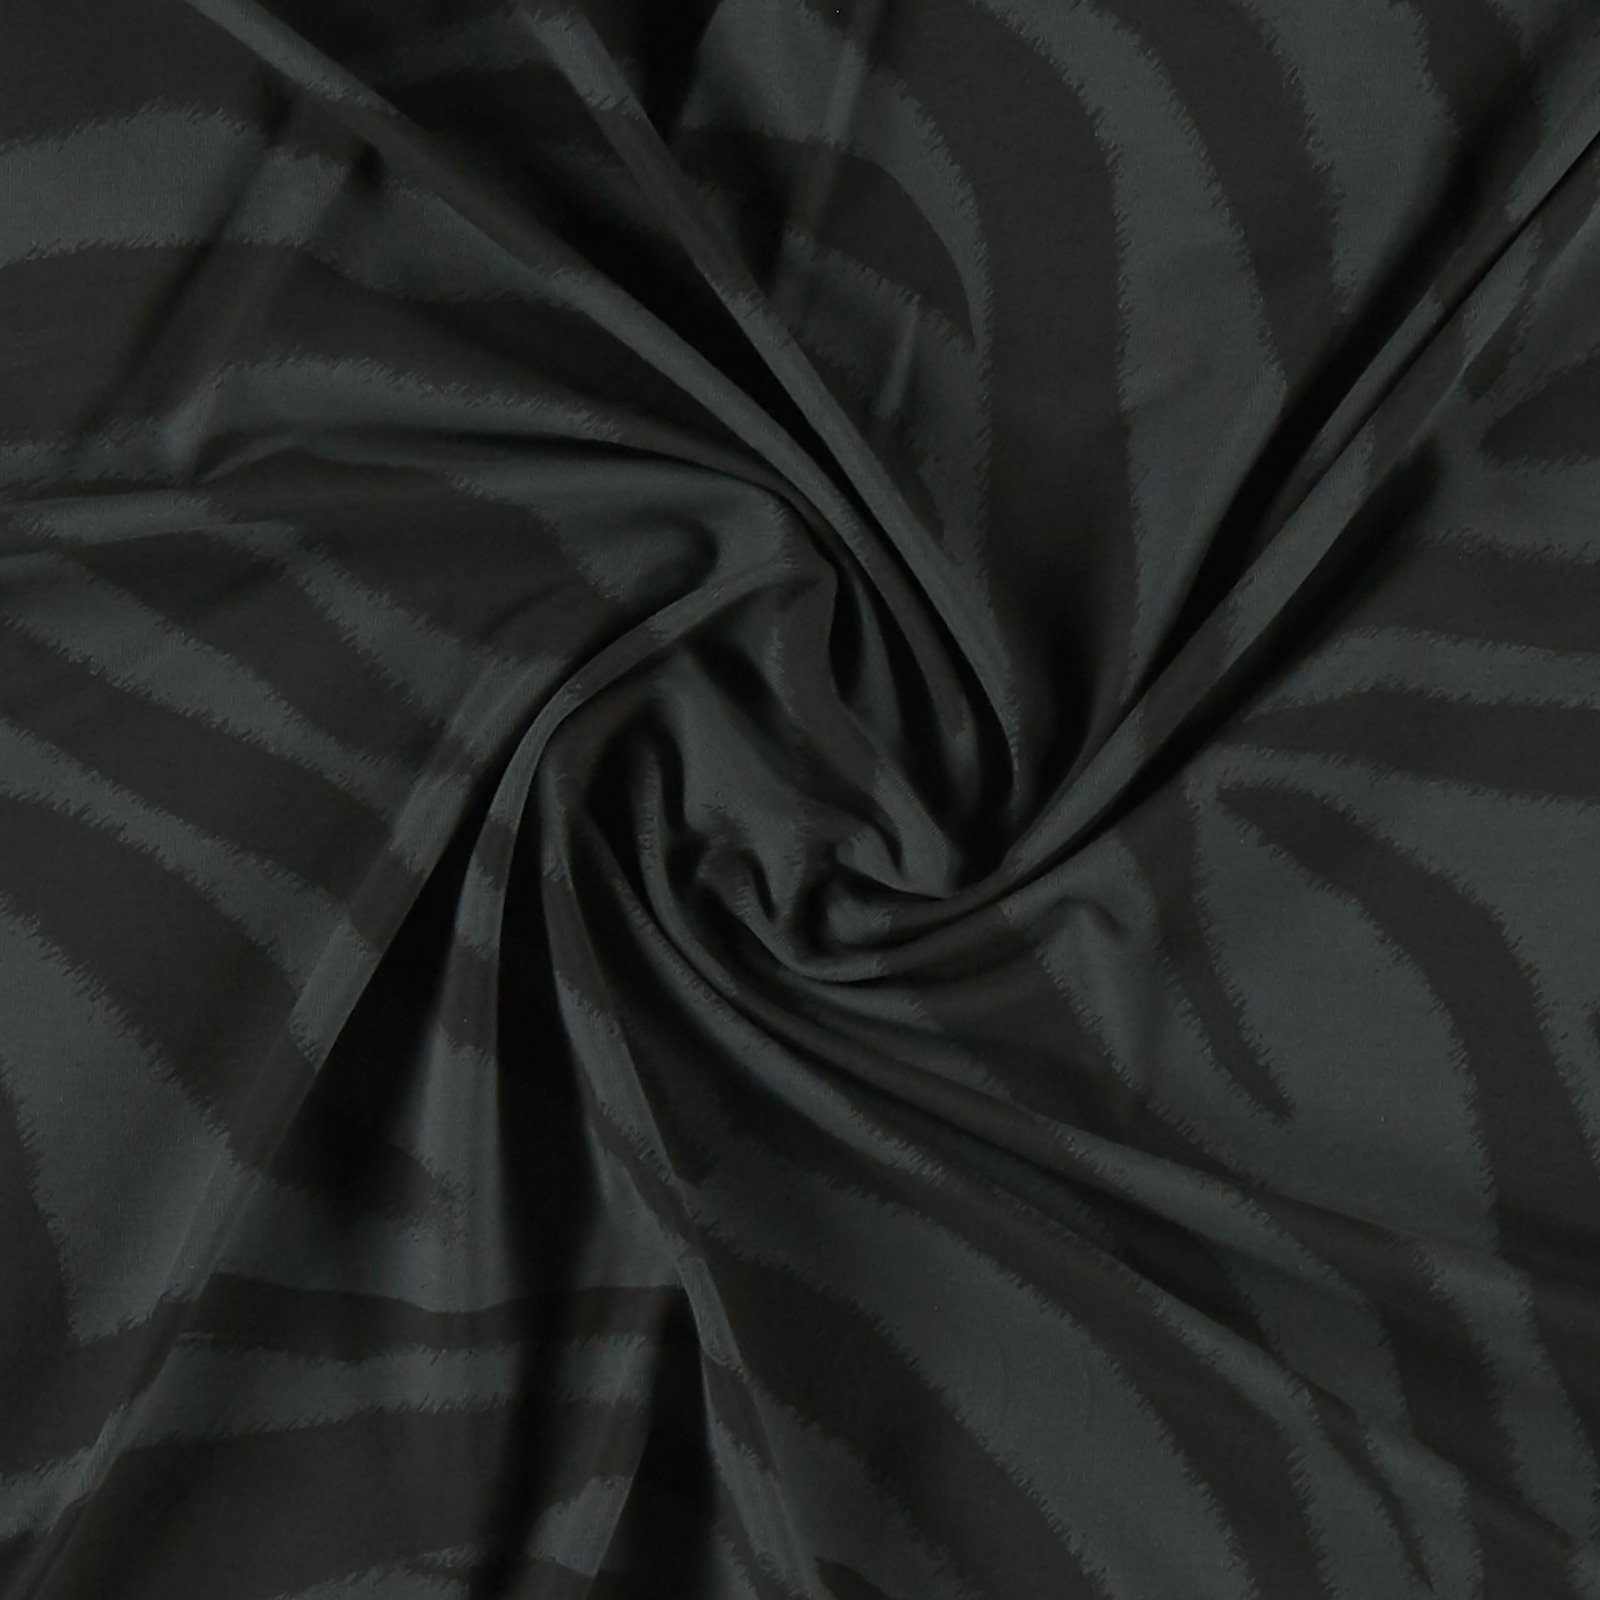 BCI str jersey dark grey w zebra stripes 273168_pack